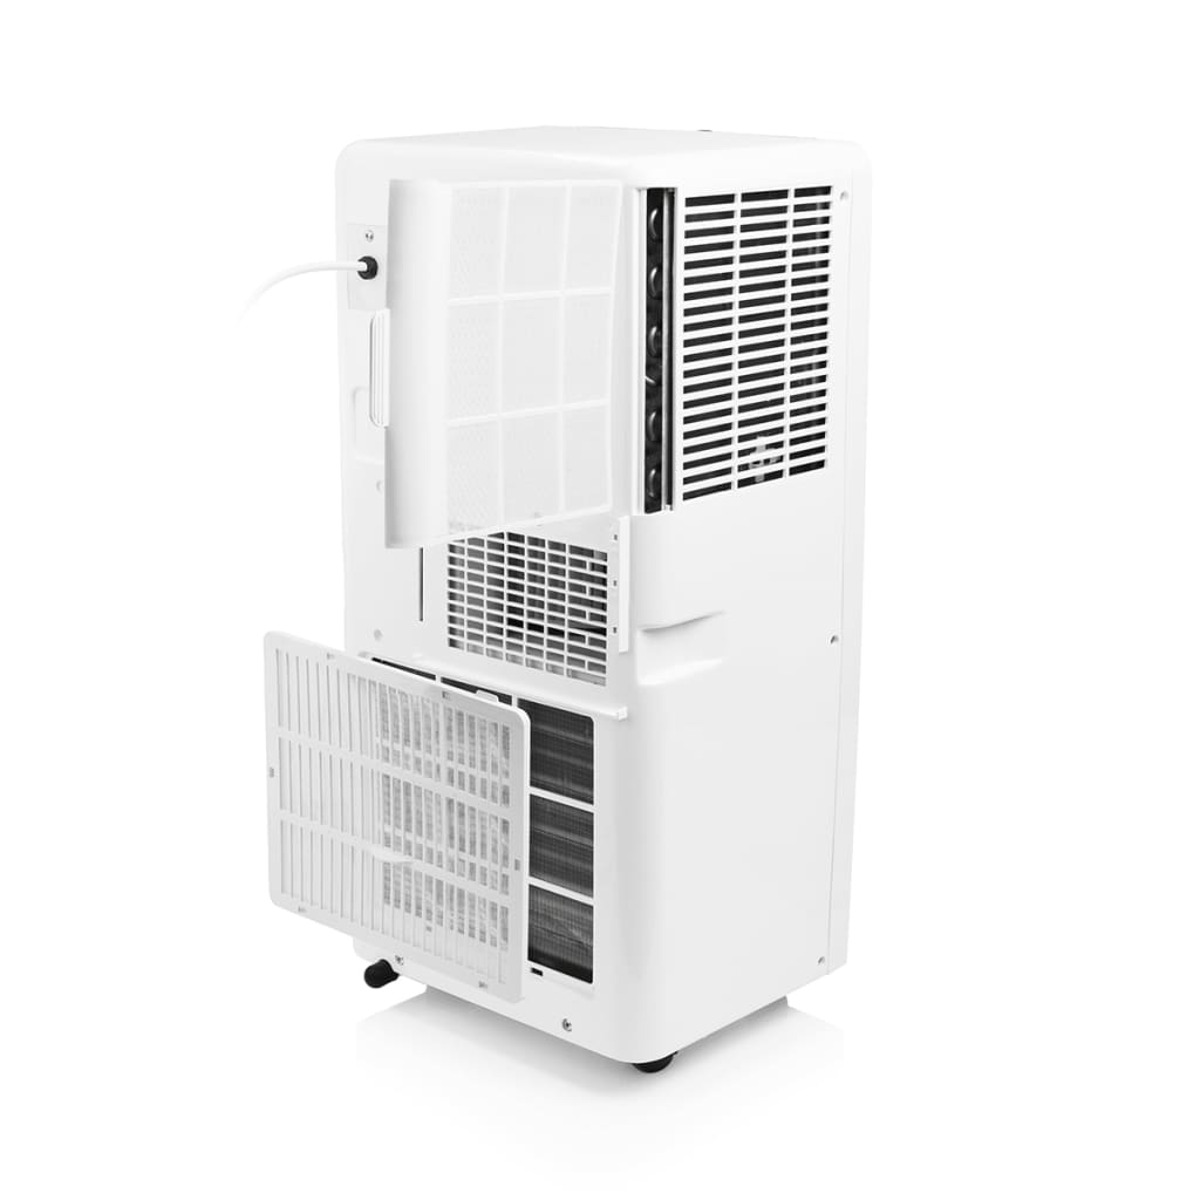 TRISTAR 410505 Klimagerät 80 Max. A, Energieeffizienzklasse: Raumgröße: Weiß m³